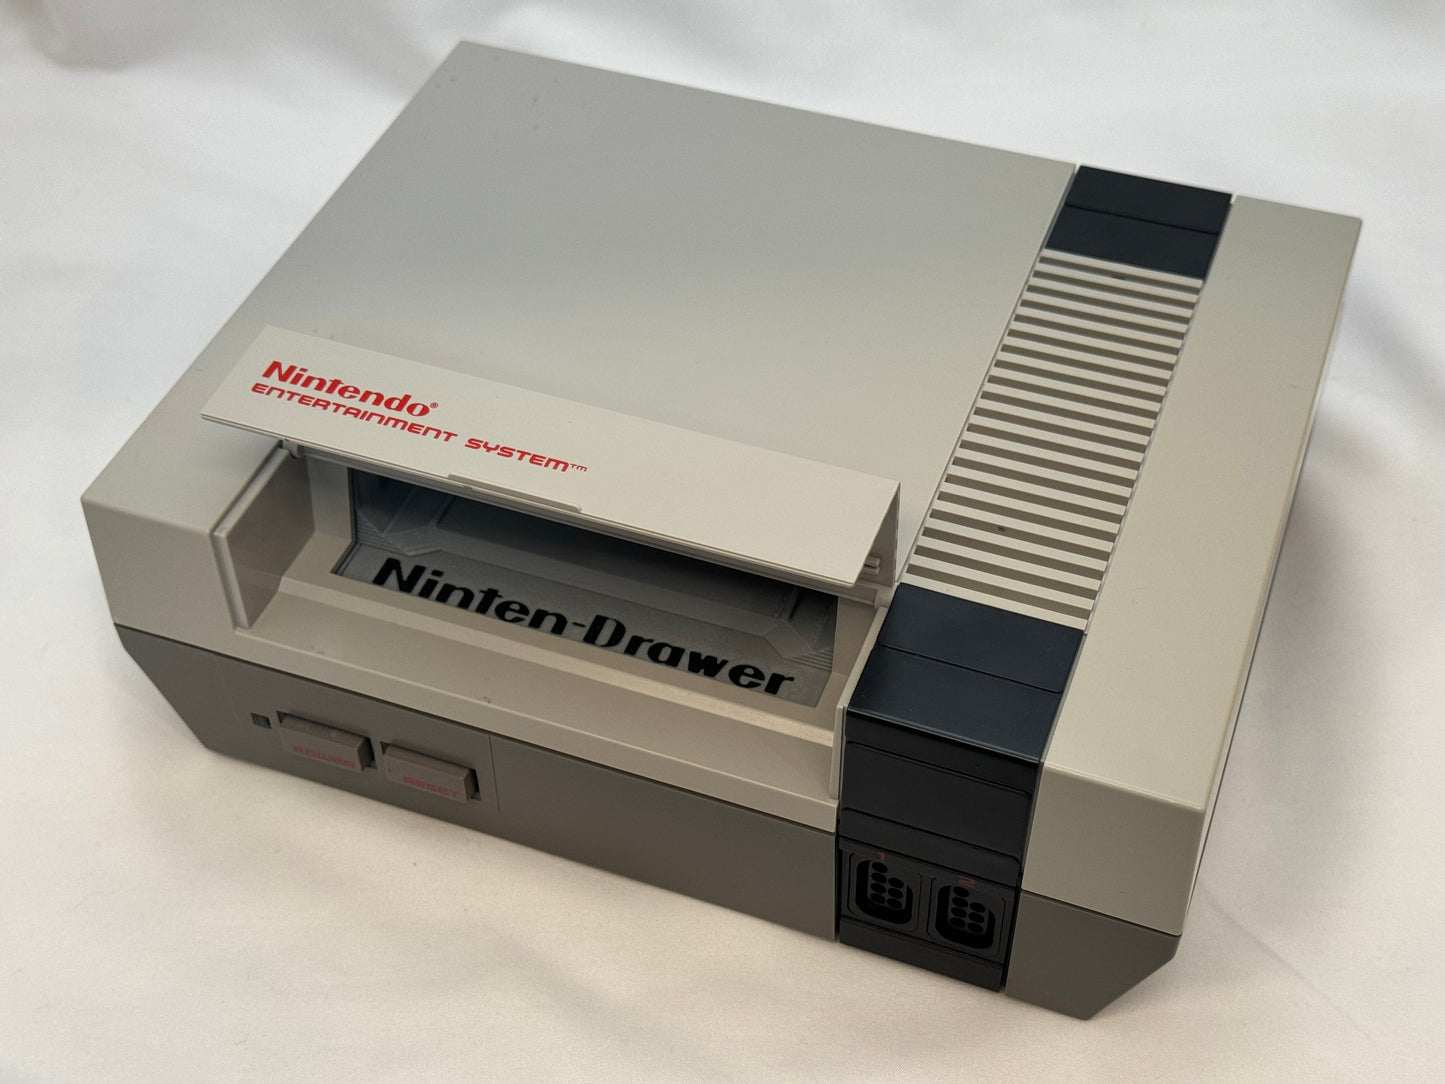 Ninten-Drawer for Nintendo NES, no game, Nintendrawer